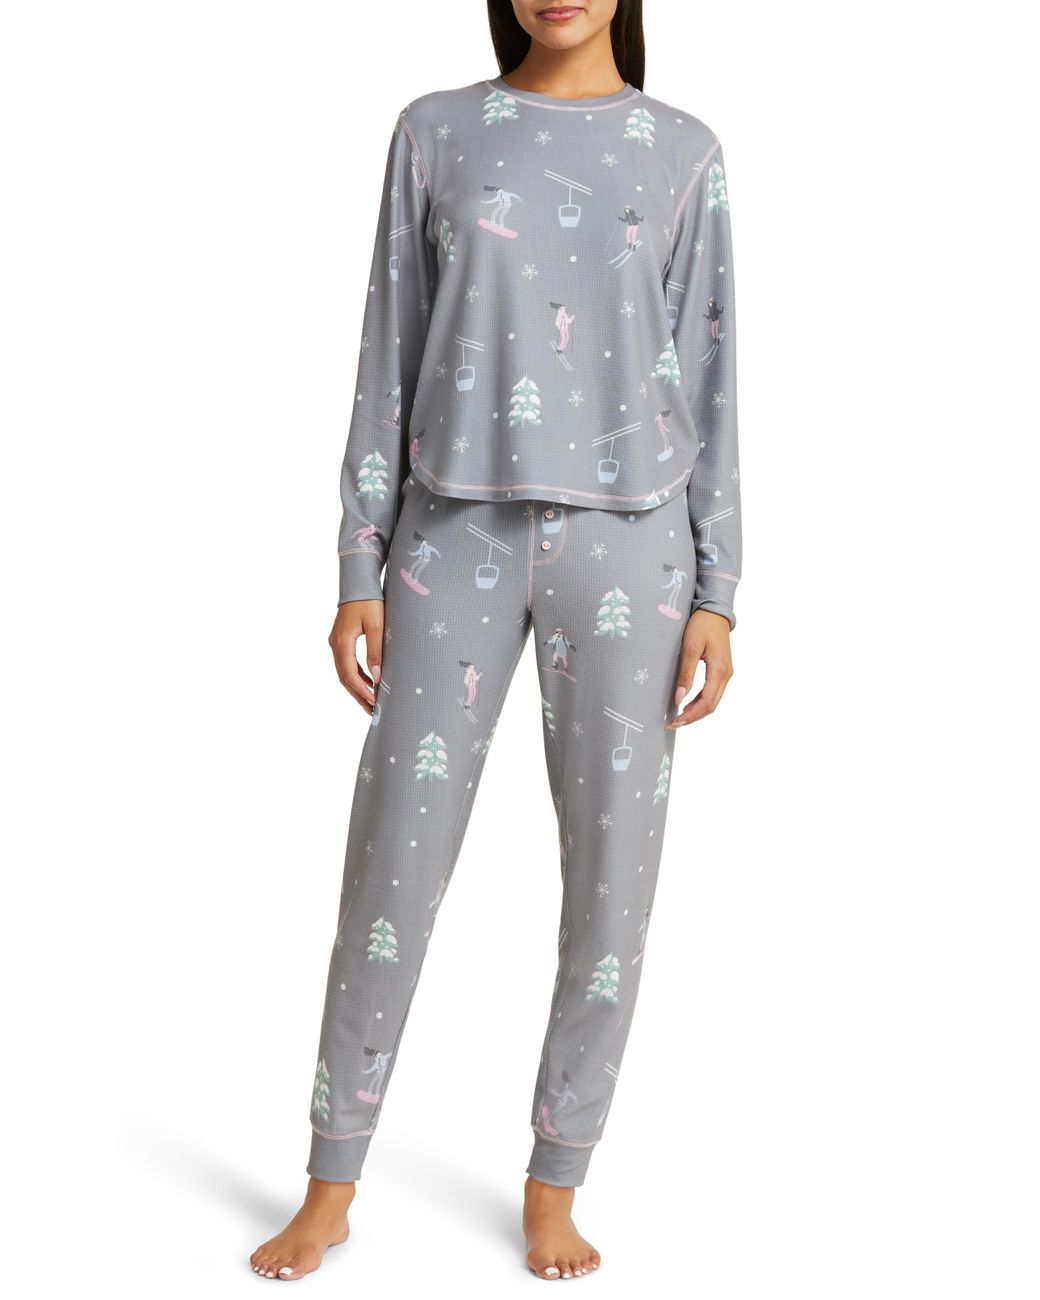 Pj Salvage Vitamin Ski Thermal Pajamas in Gray